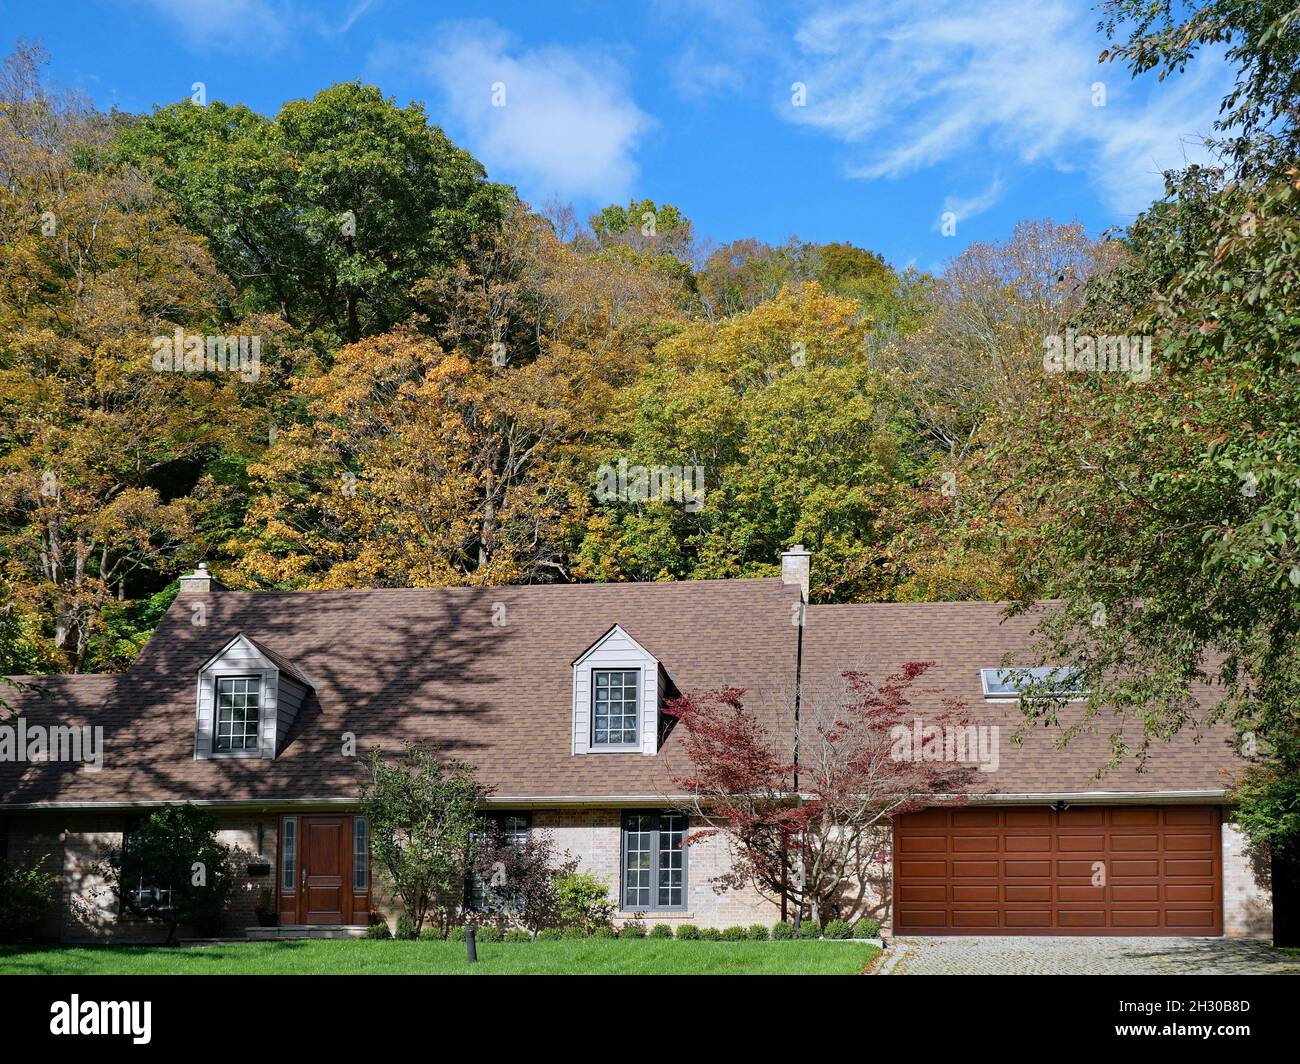 Maison de style ranch avec dortoirs et garage pour deux voitures, entourée d'arbres aux couleurs d'automne Banque D'Images